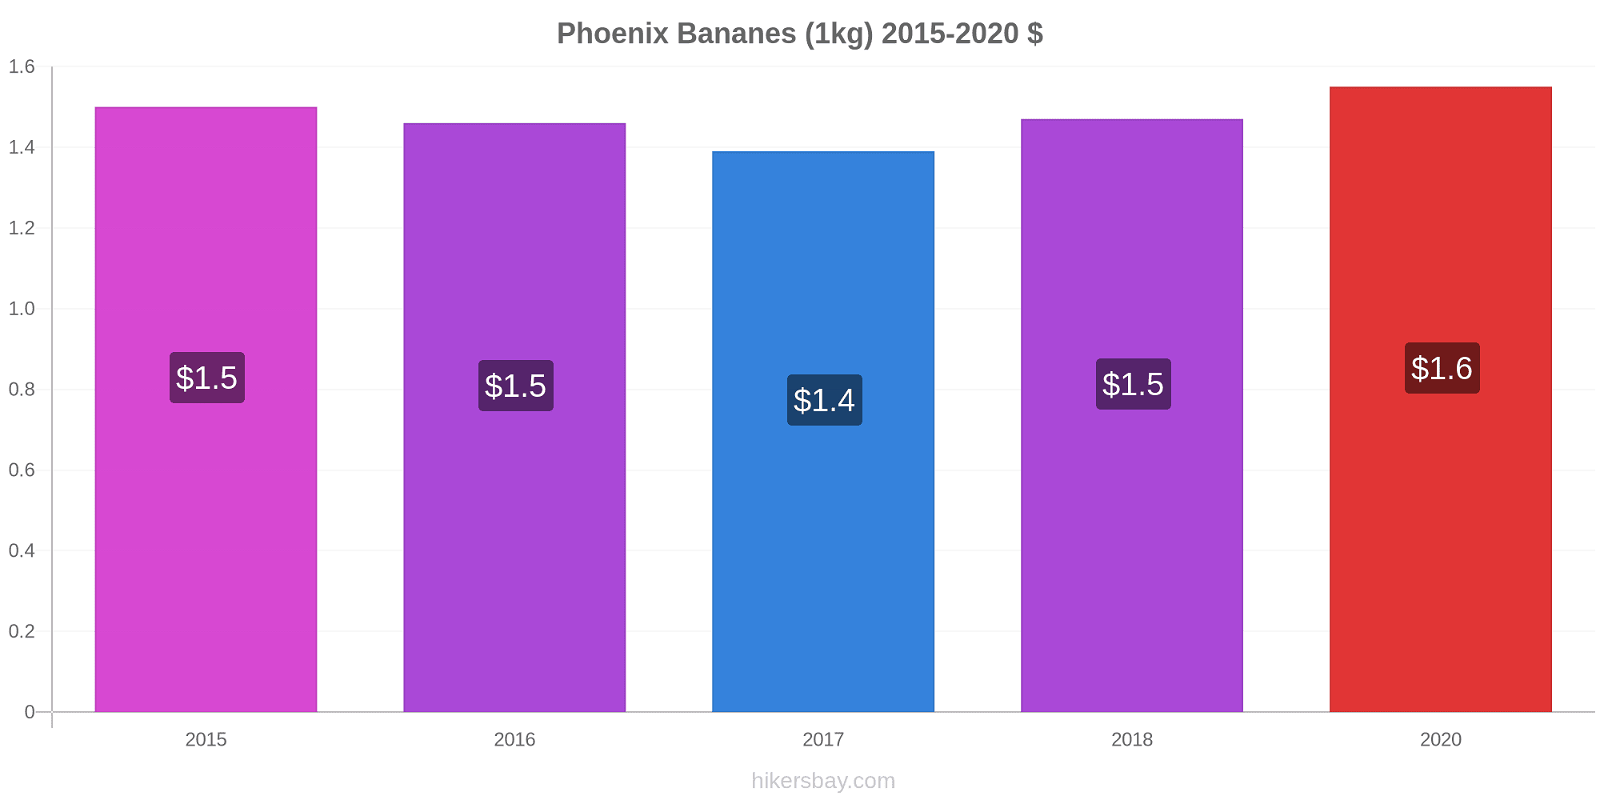 Phoenix changements de prix Bananes (1kg) hikersbay.com